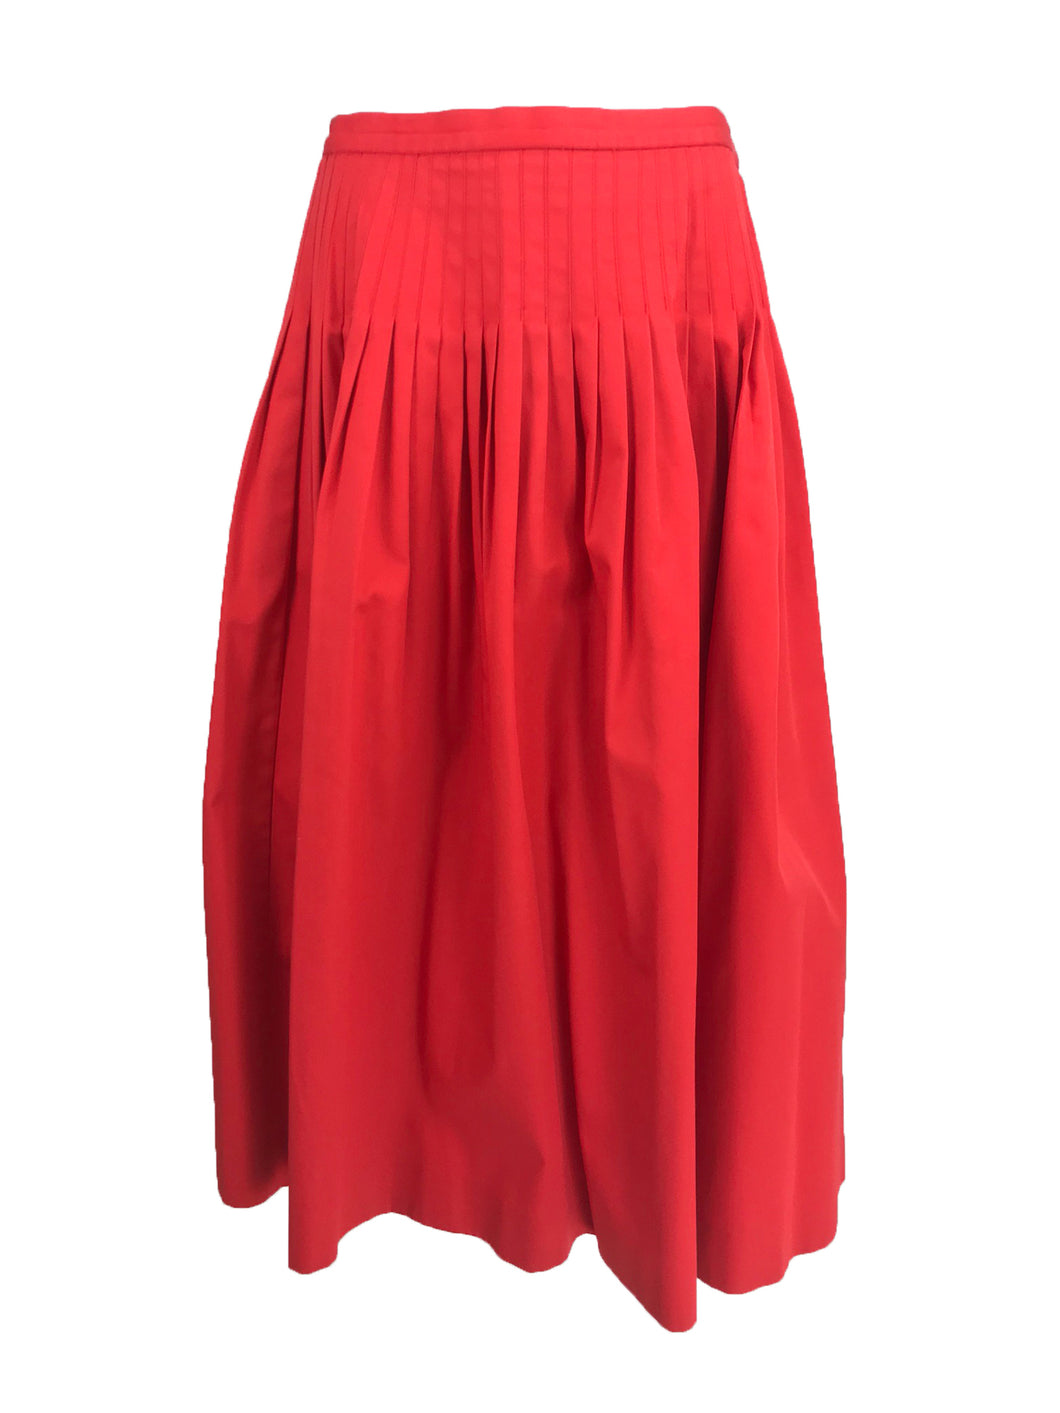 Vintage Yves Saint Laurent Tomato Red Cotton Full Pleated Skirt 1970s